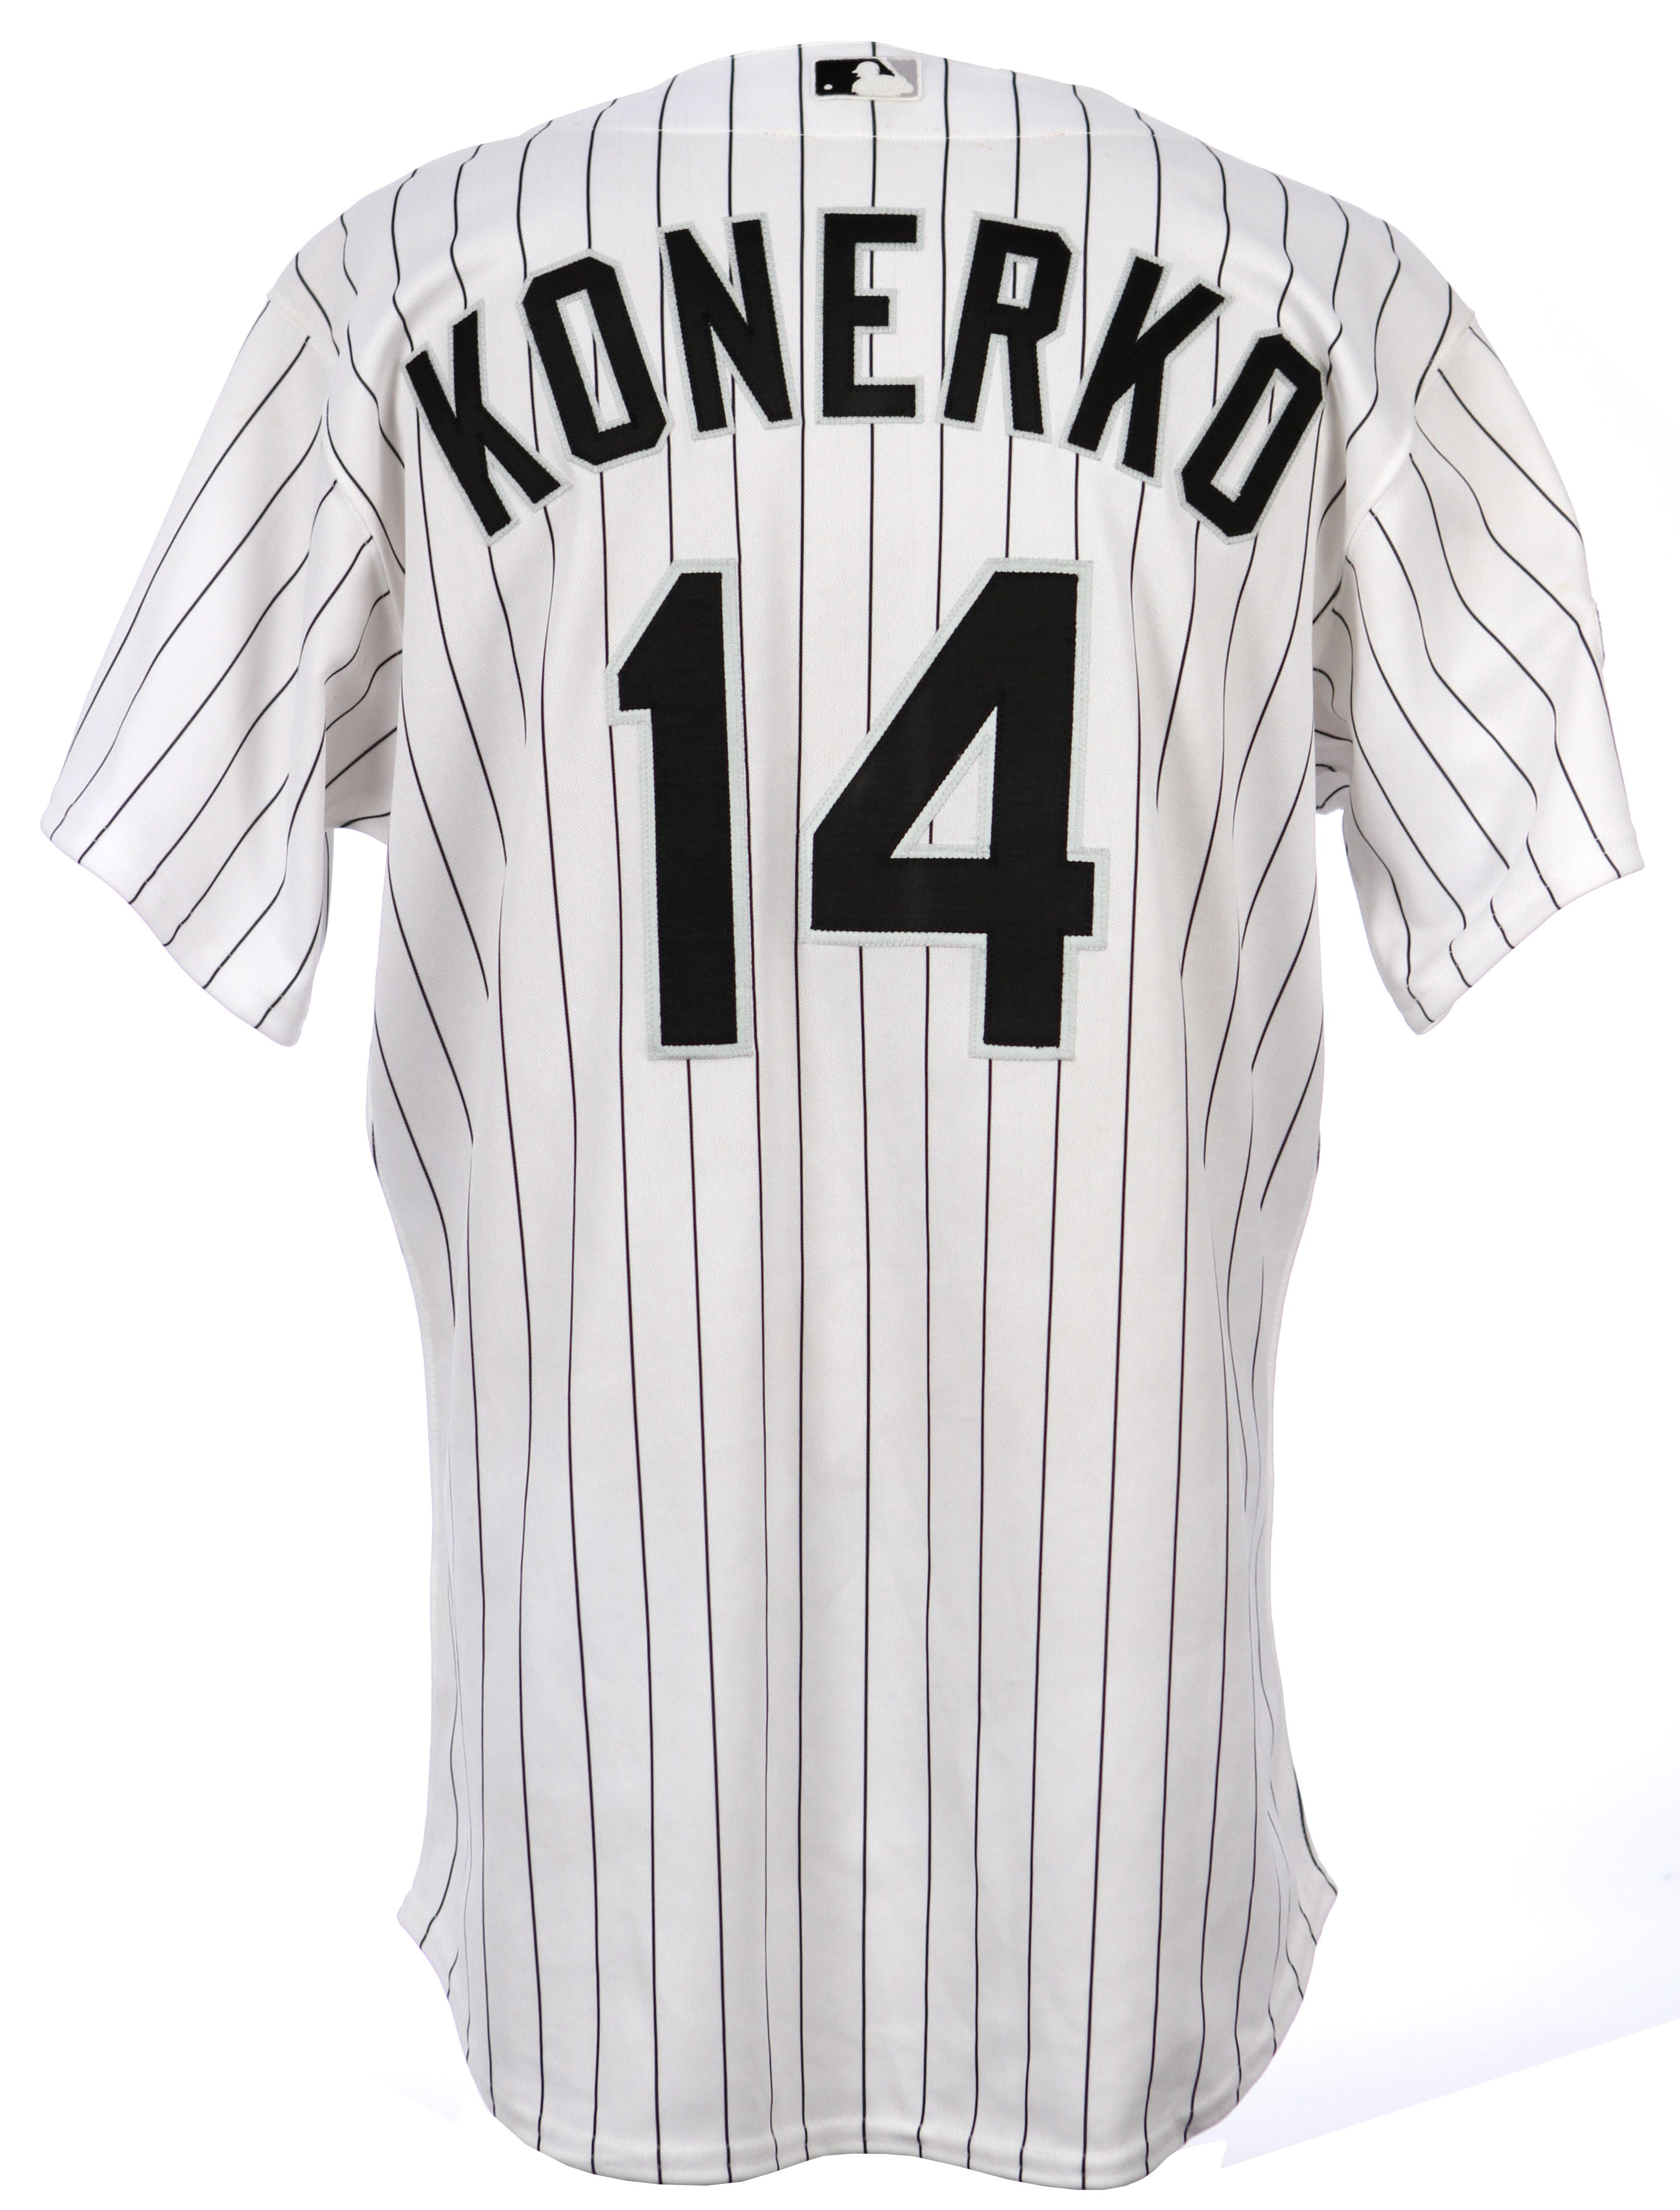 Lot Detail - 2005 Paul Konerko Chicago White Sox Signed World